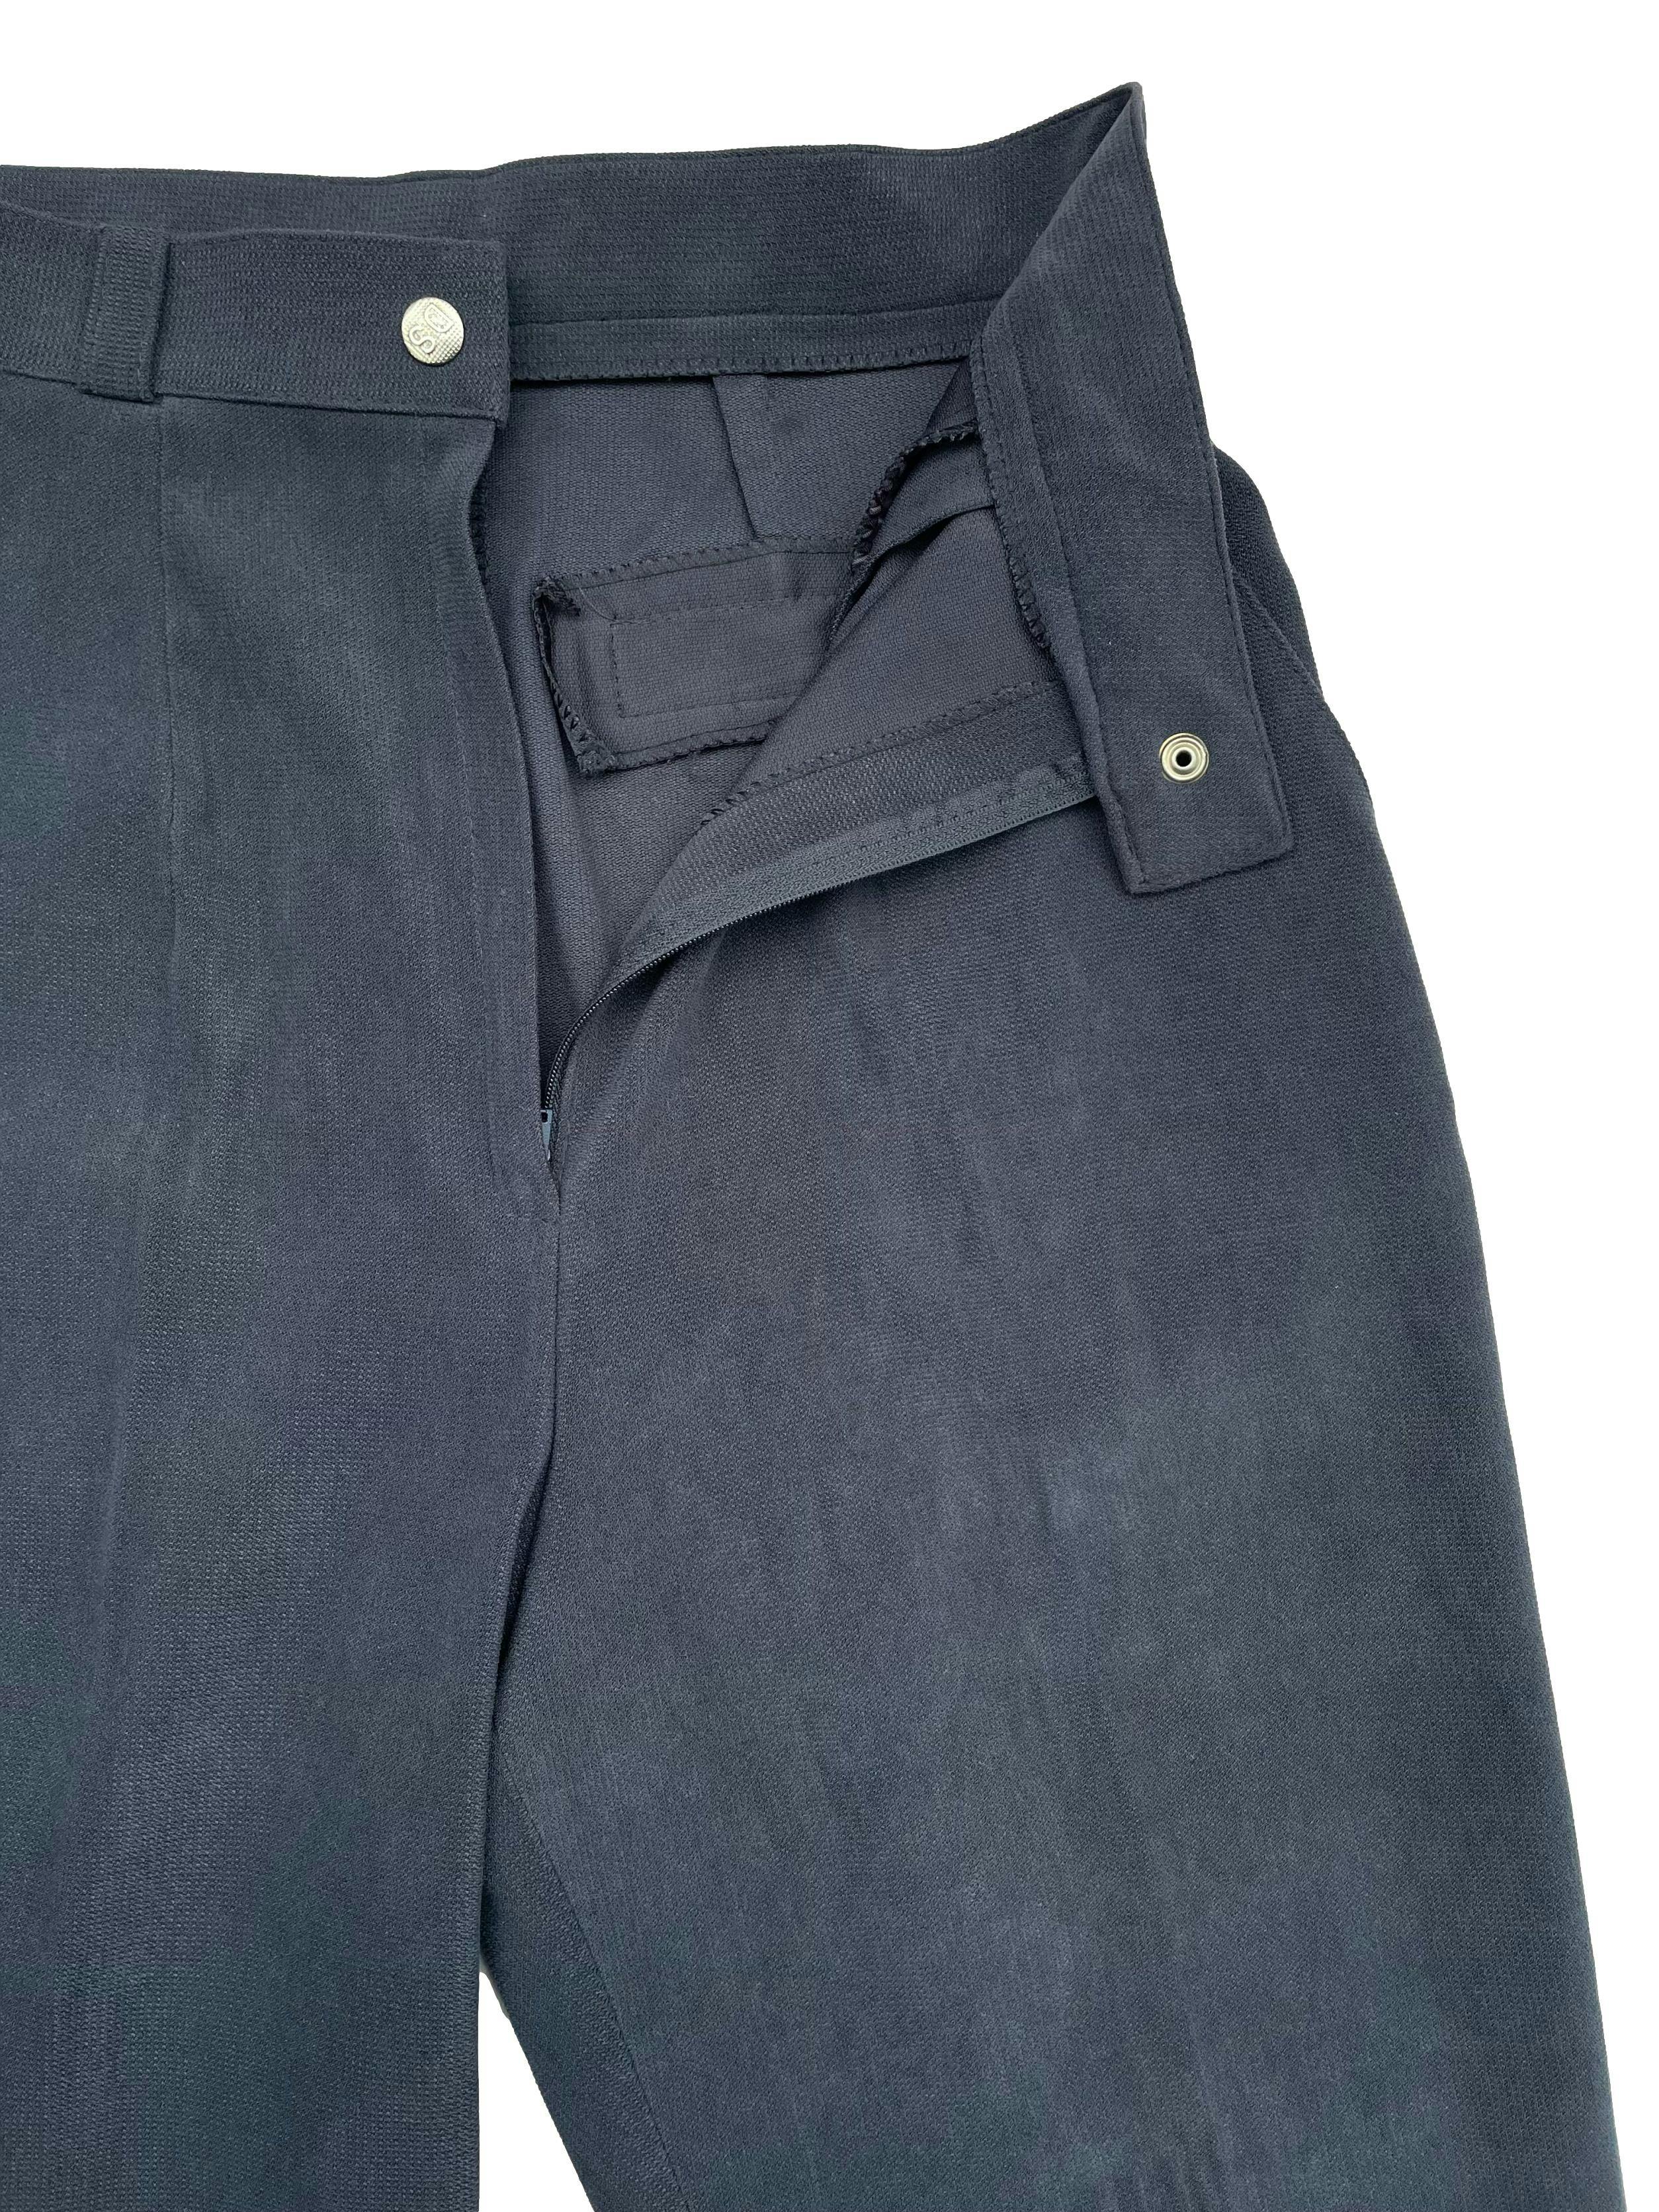 Pantalón vintage gris azulado, corte mom jean a la cintura, tela tipo corduroy delgado. Cintura 70cm, Largo 97cm.